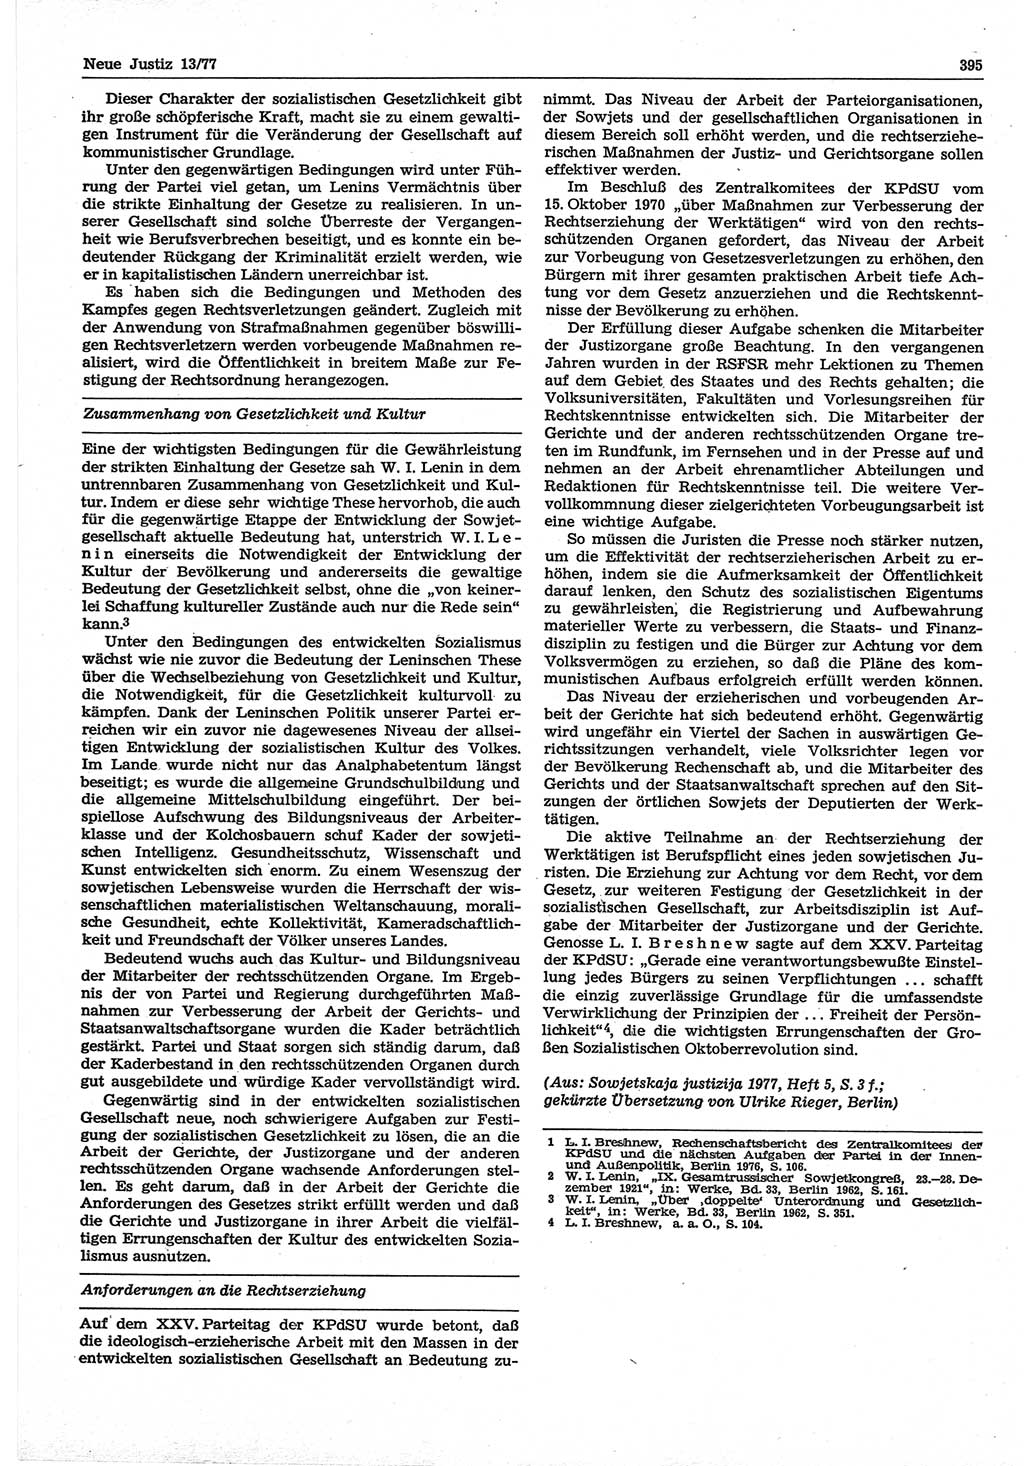 Neue Justiz (NJ), Zeitschrift für Recht und Rechtswissenschaft-Zeitschrift, sozialistisches Recht und Gesetzlichkeit, 31. Jahrgang 1977, Seite 395 (NJ DDR 1977, S. 395)